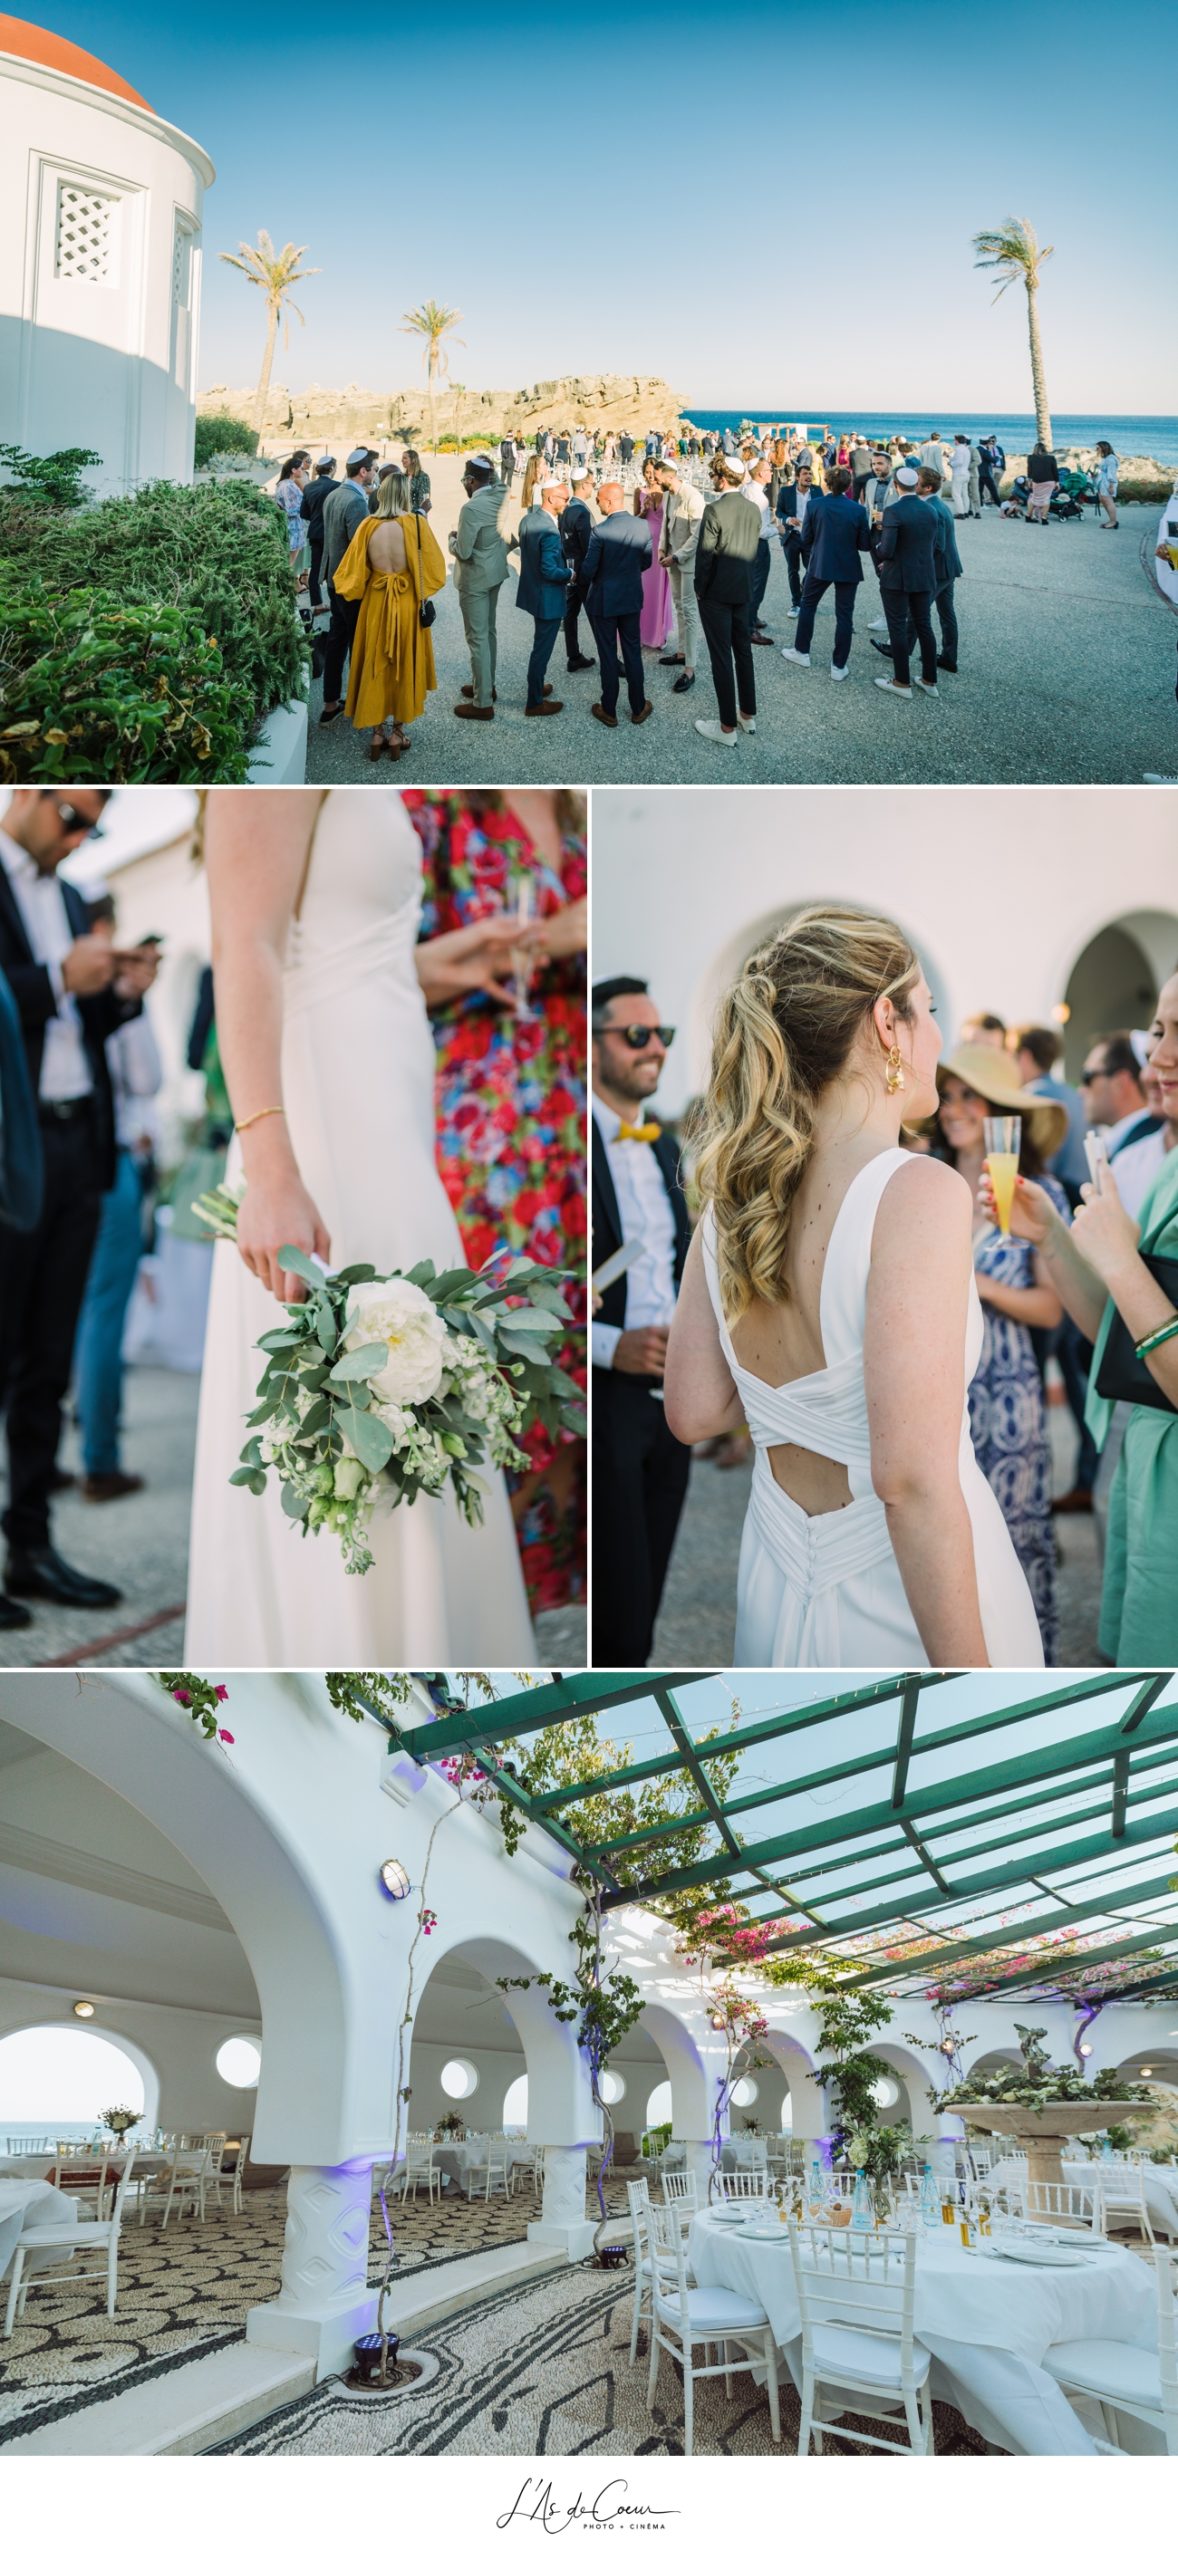 Photographe mariage grece - wedding photographer greece outdoor